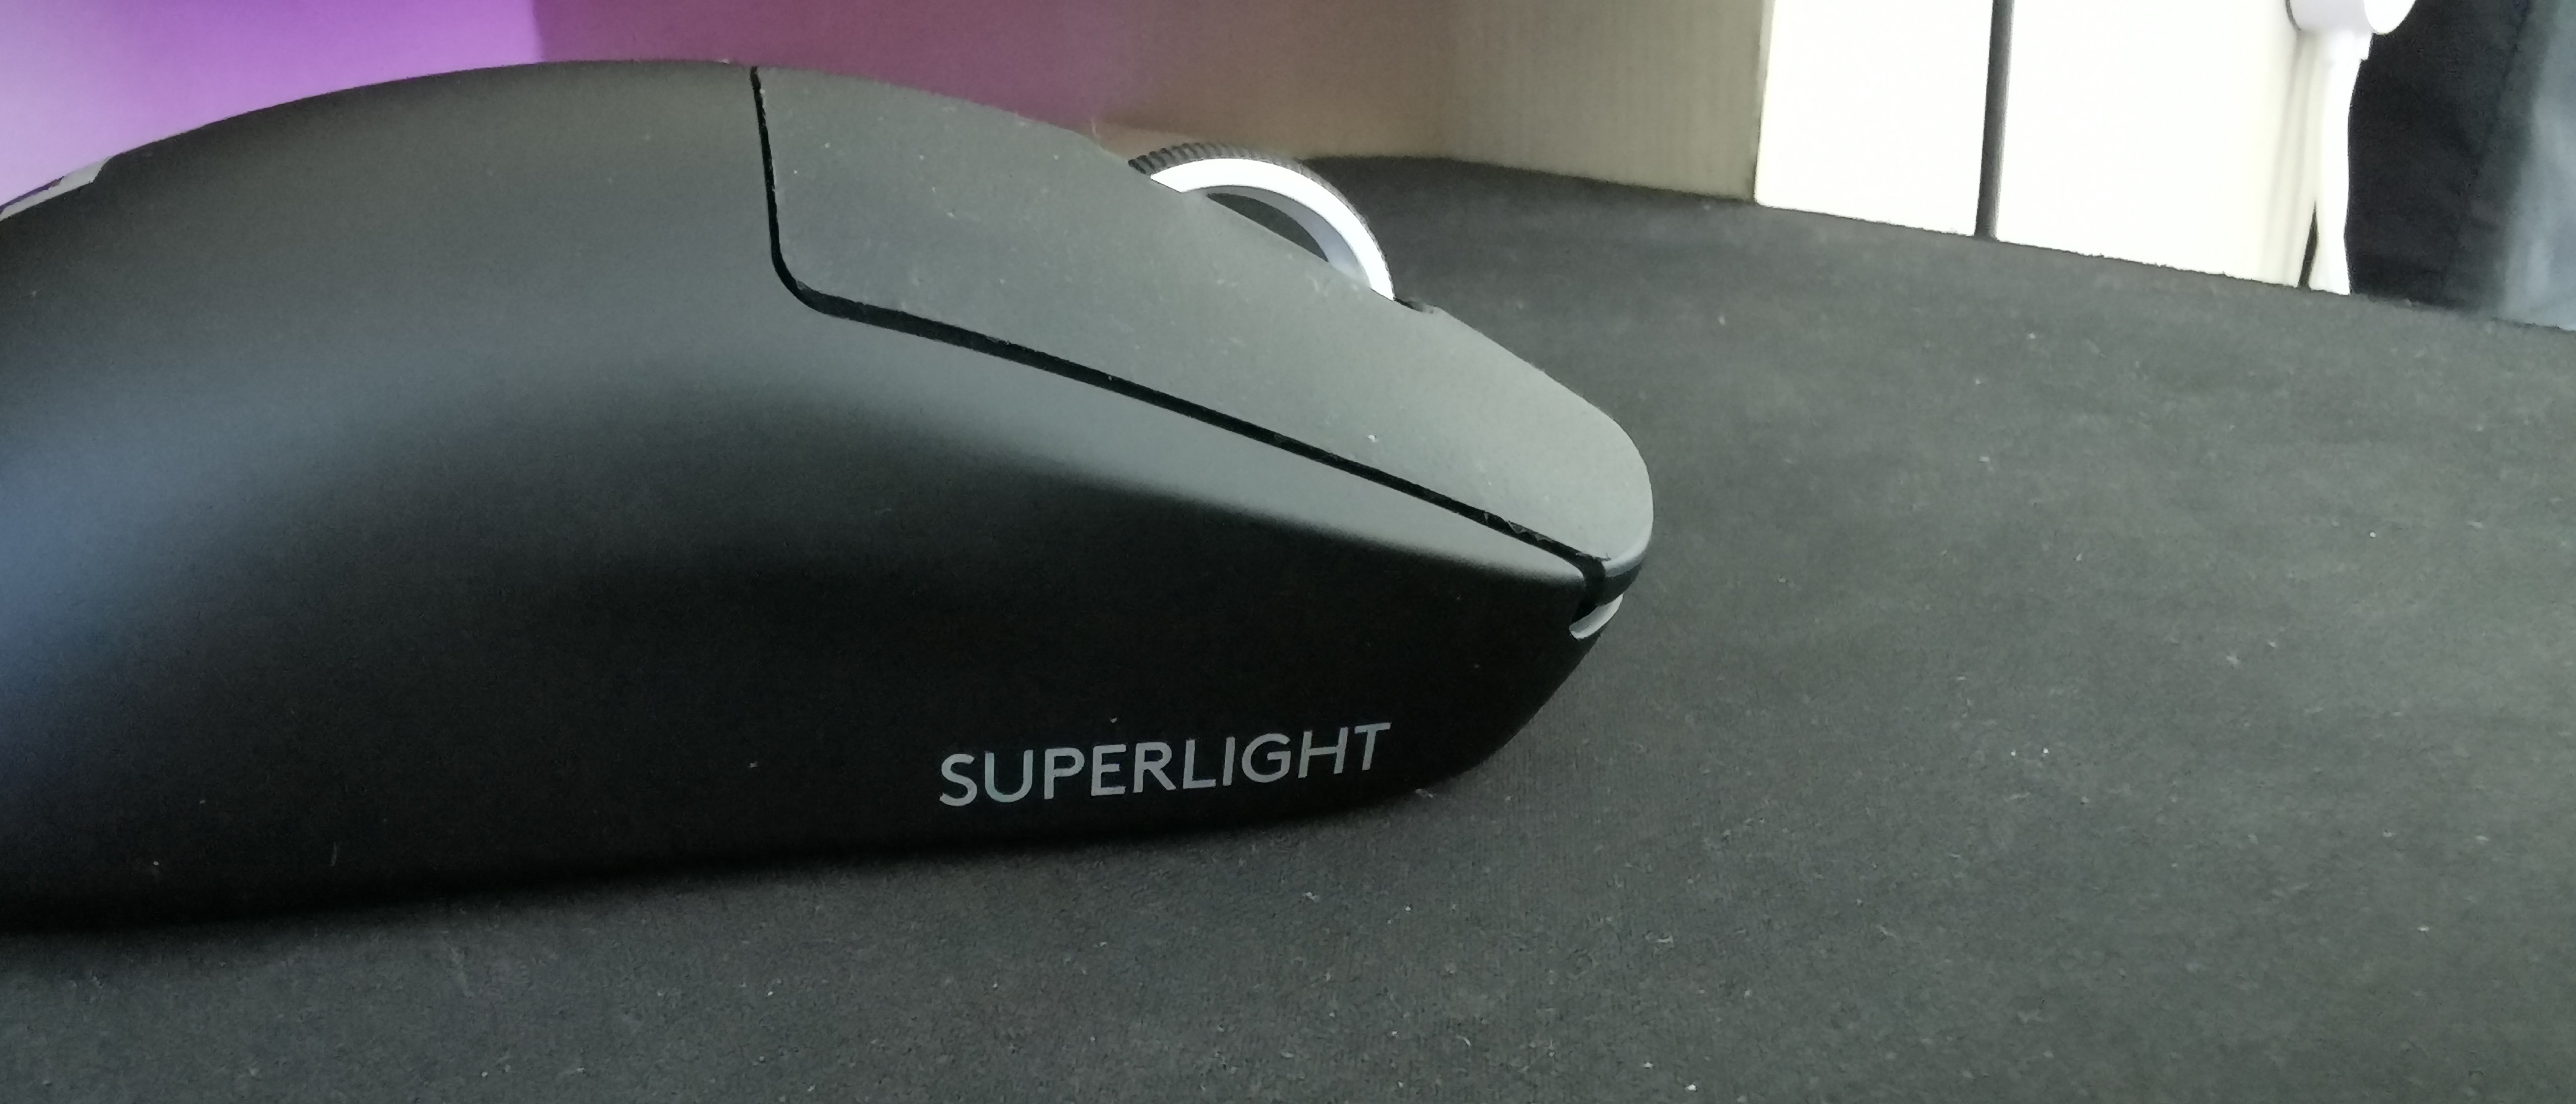 Logitech G Pro X Superlight review: Sleek minimalism meets